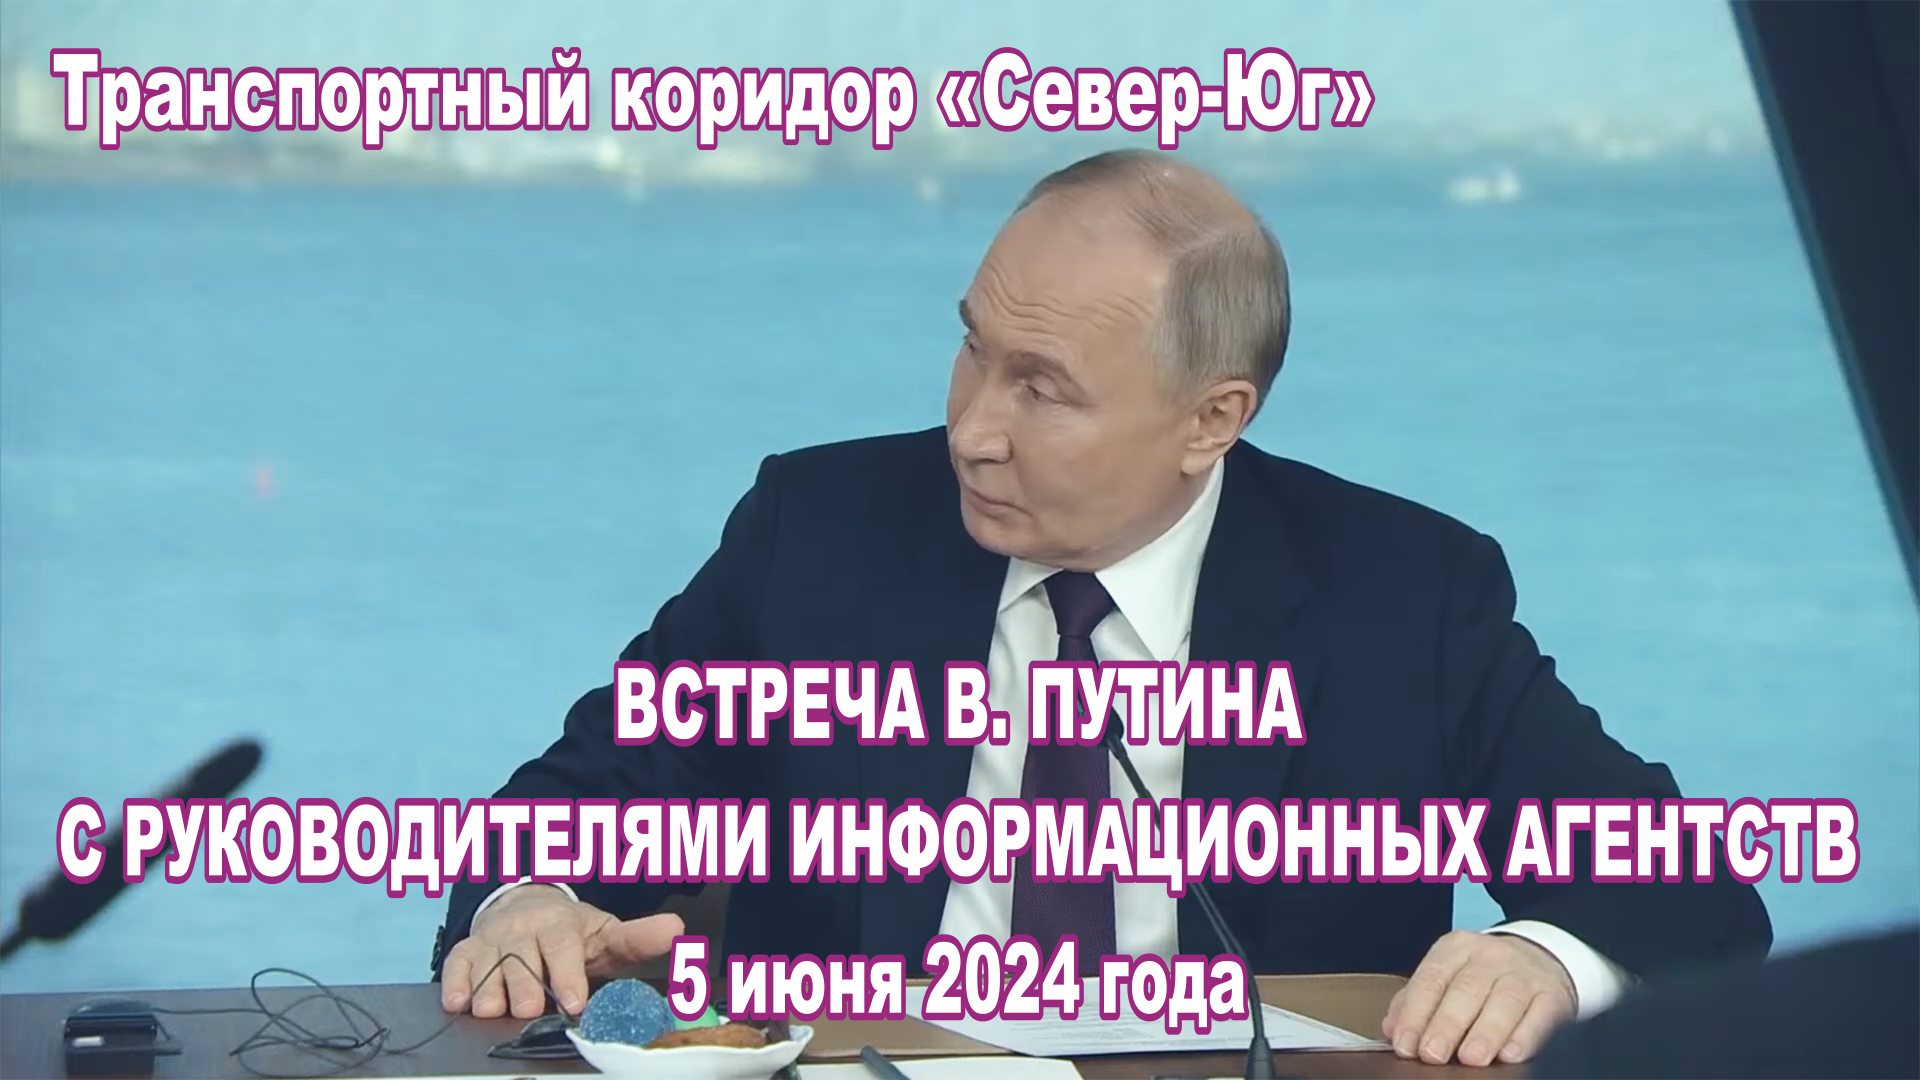 Встреча В. Путина с руководителями информационных агентств 5 июня 2024 года. Дорога "Север-Юг".